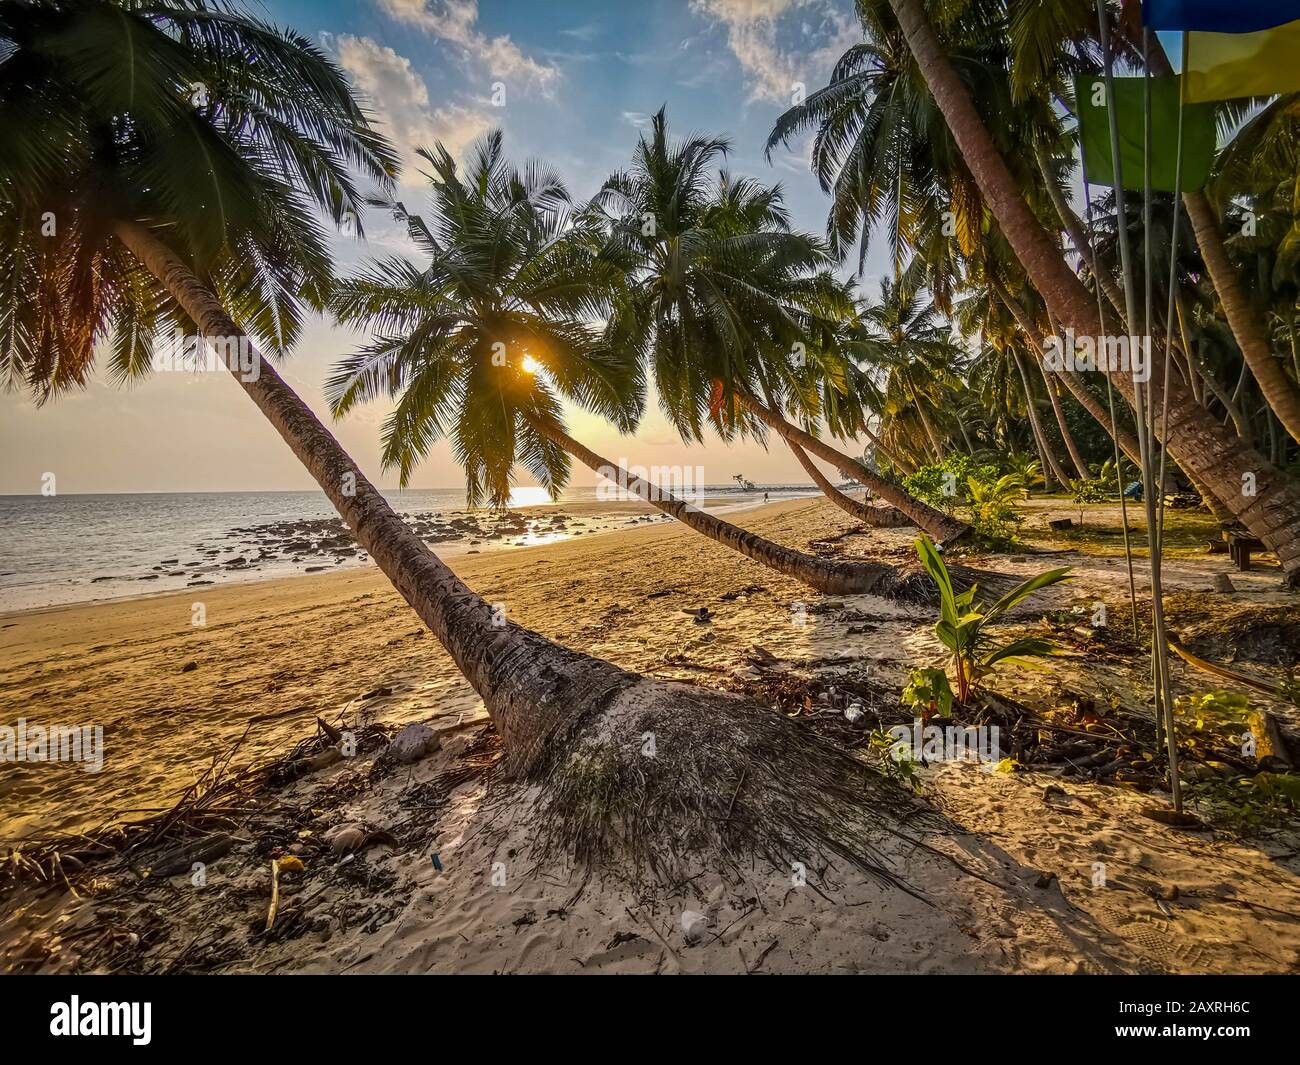 Coconut tree at beach Stock Photo